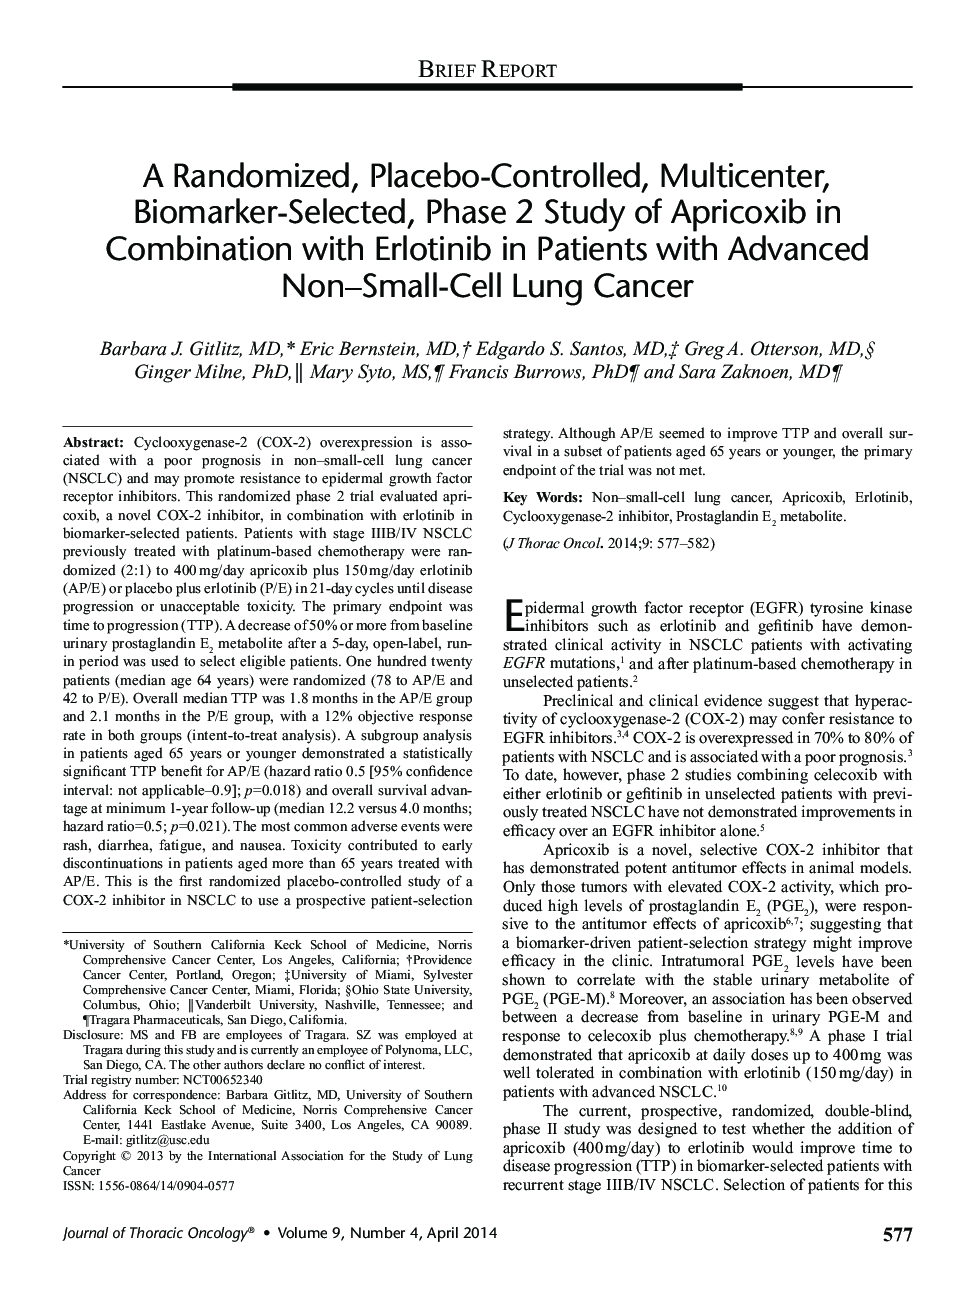 یک مطالعه تصادفی شده، کنترل شده با پلاسبو، چند کانونی، انتخاب بیومارکر، مرحله 2 مطالعه زردآلو در ترکیب با ارلوتینیب در بیماران مبتلا به سرطان ریه کوچک سلول های نونا پیشرفته 